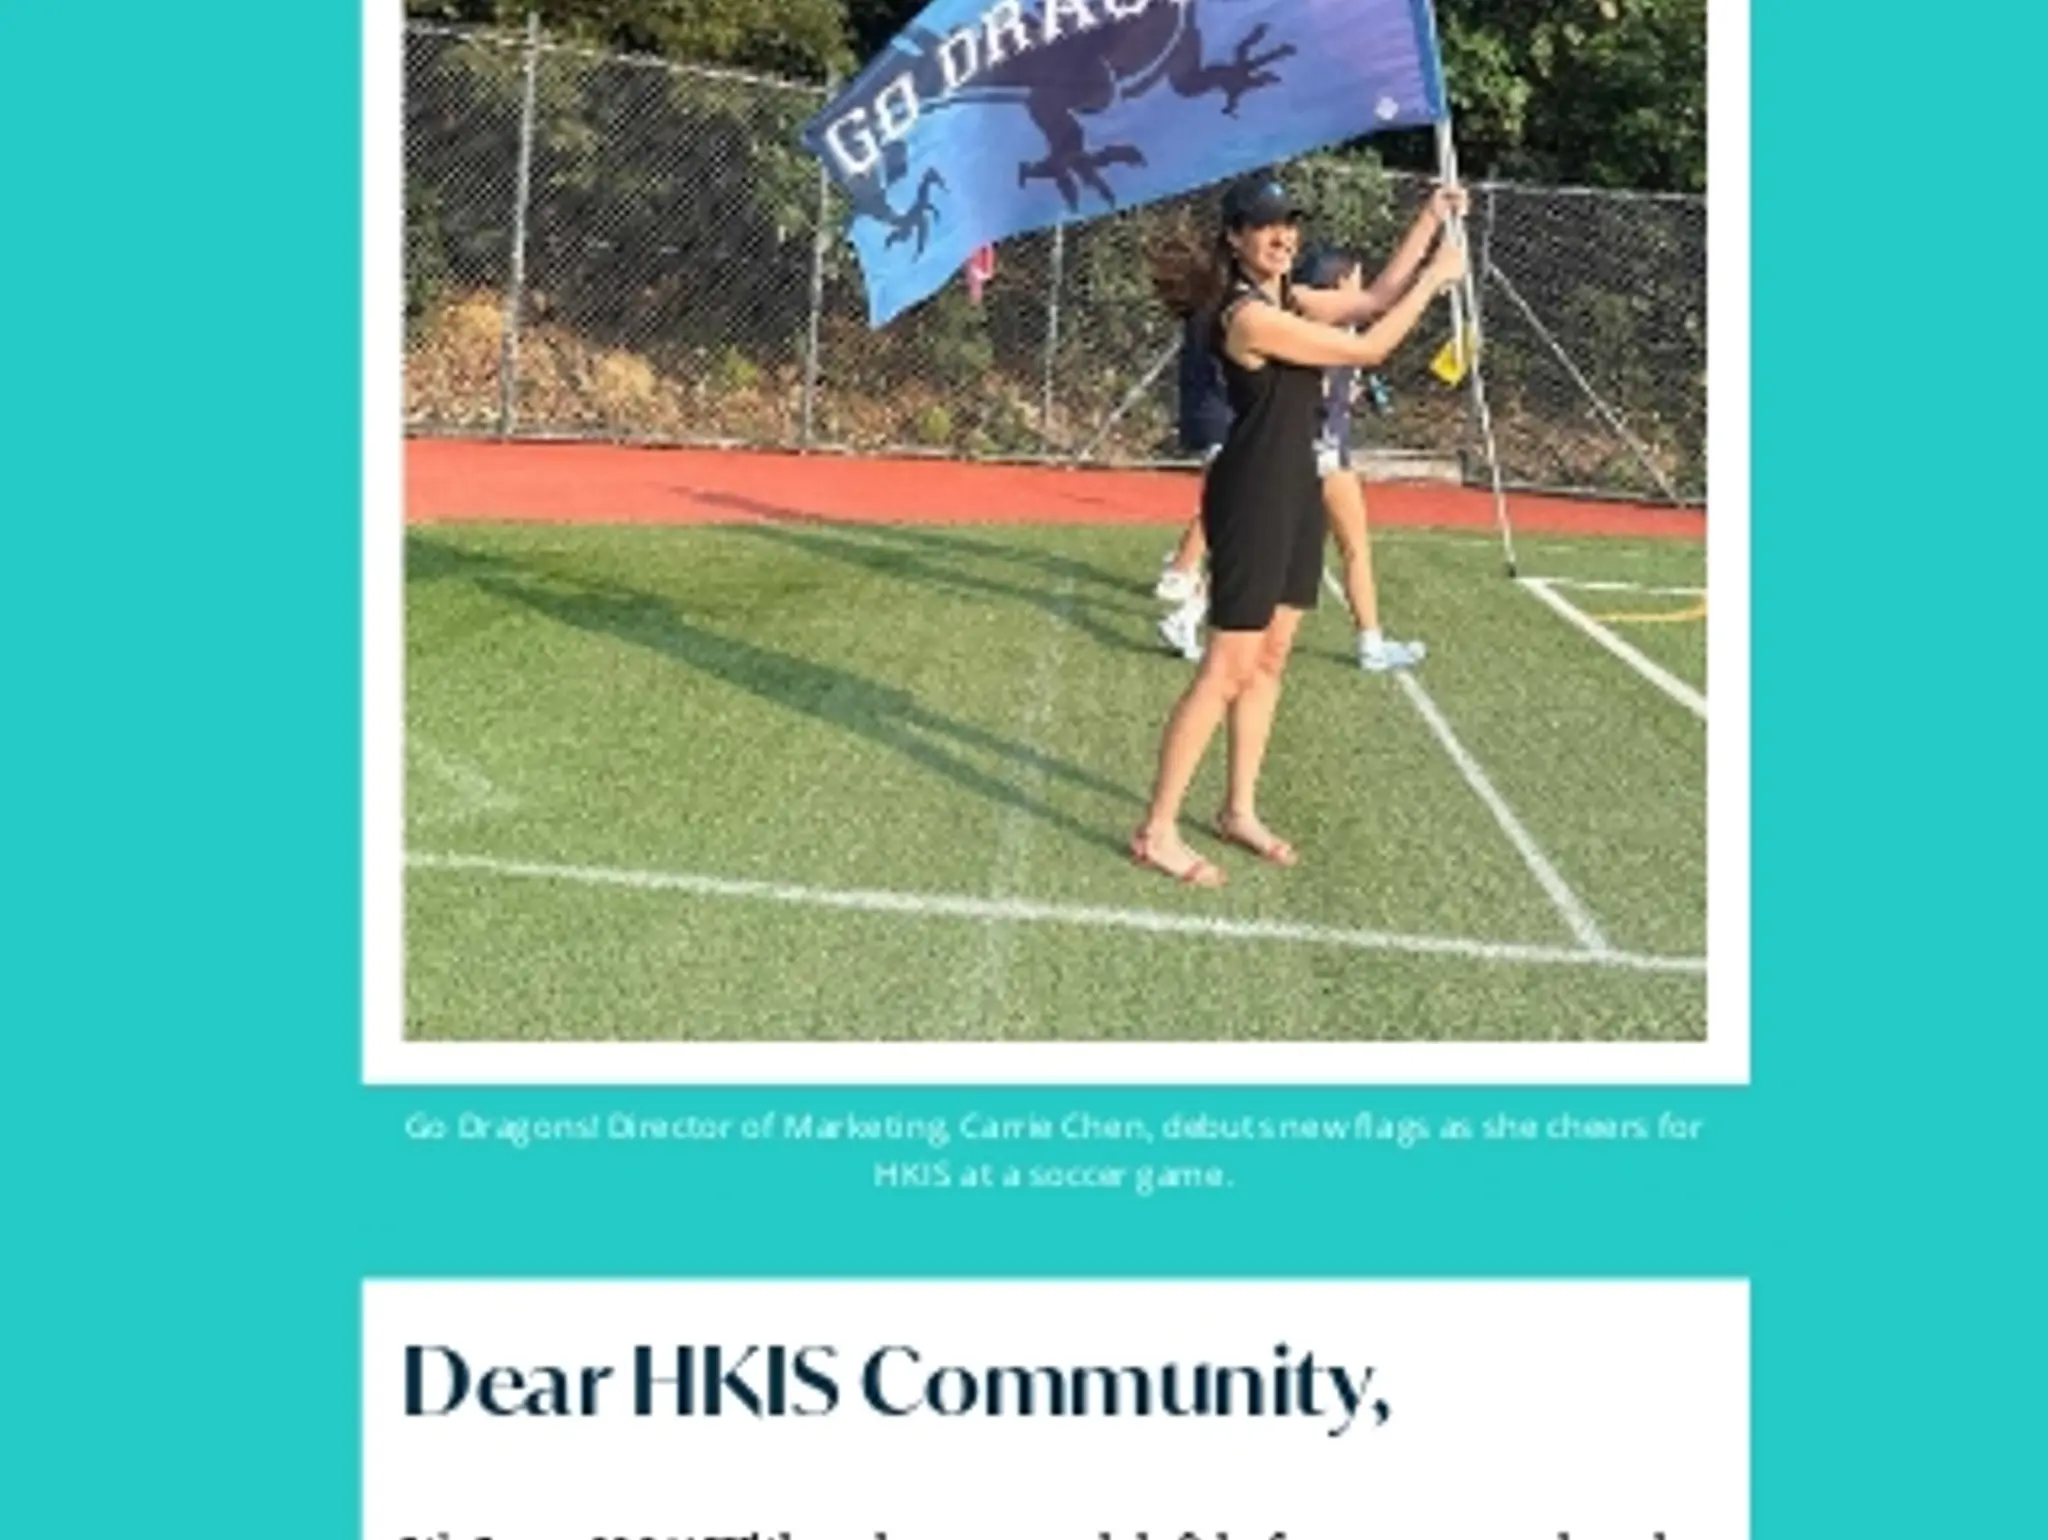 Dear HKIS Community